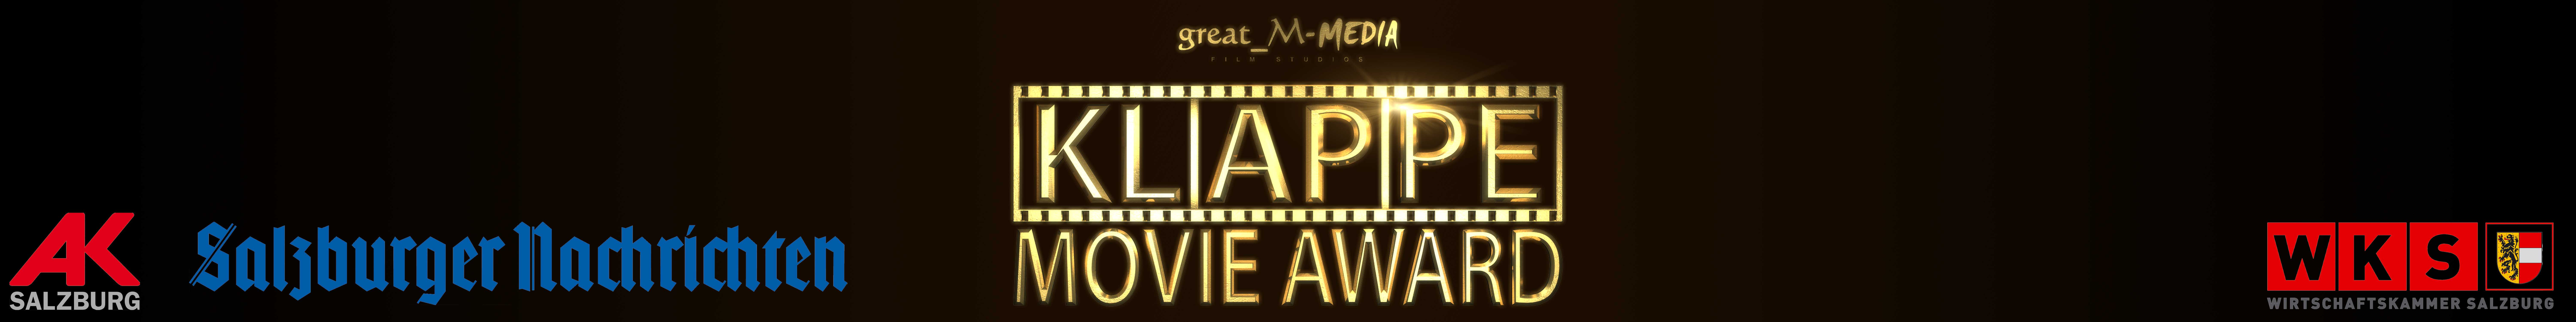 Klappe great_M-Media Movie Aword